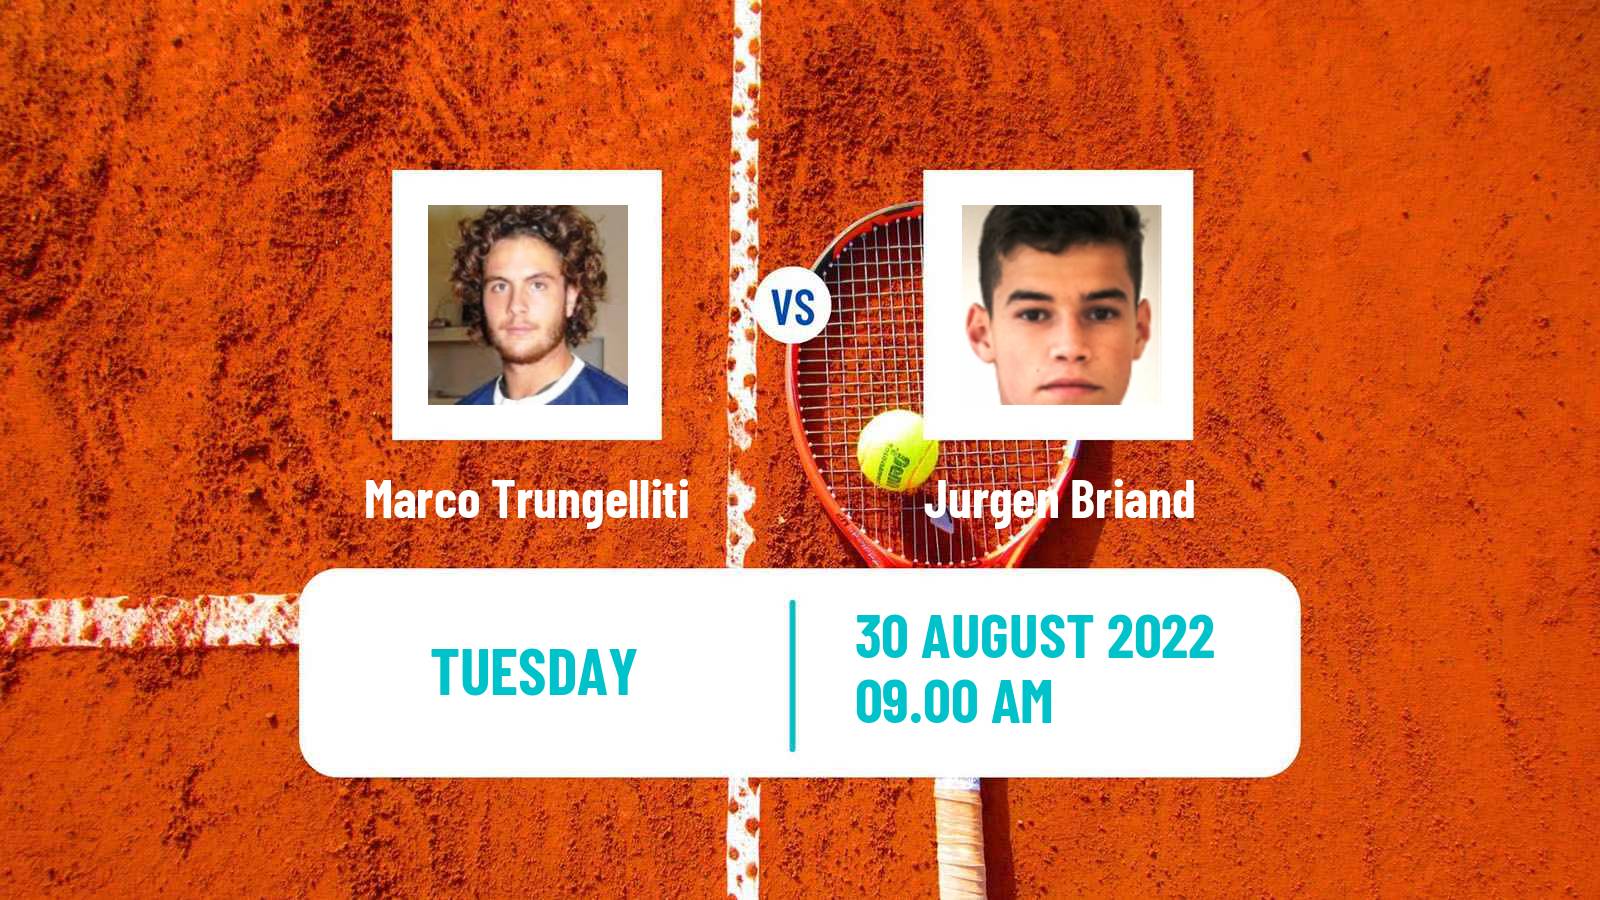 Tennis ATP Challenger Marco Trungelliti - Jurgen Briand